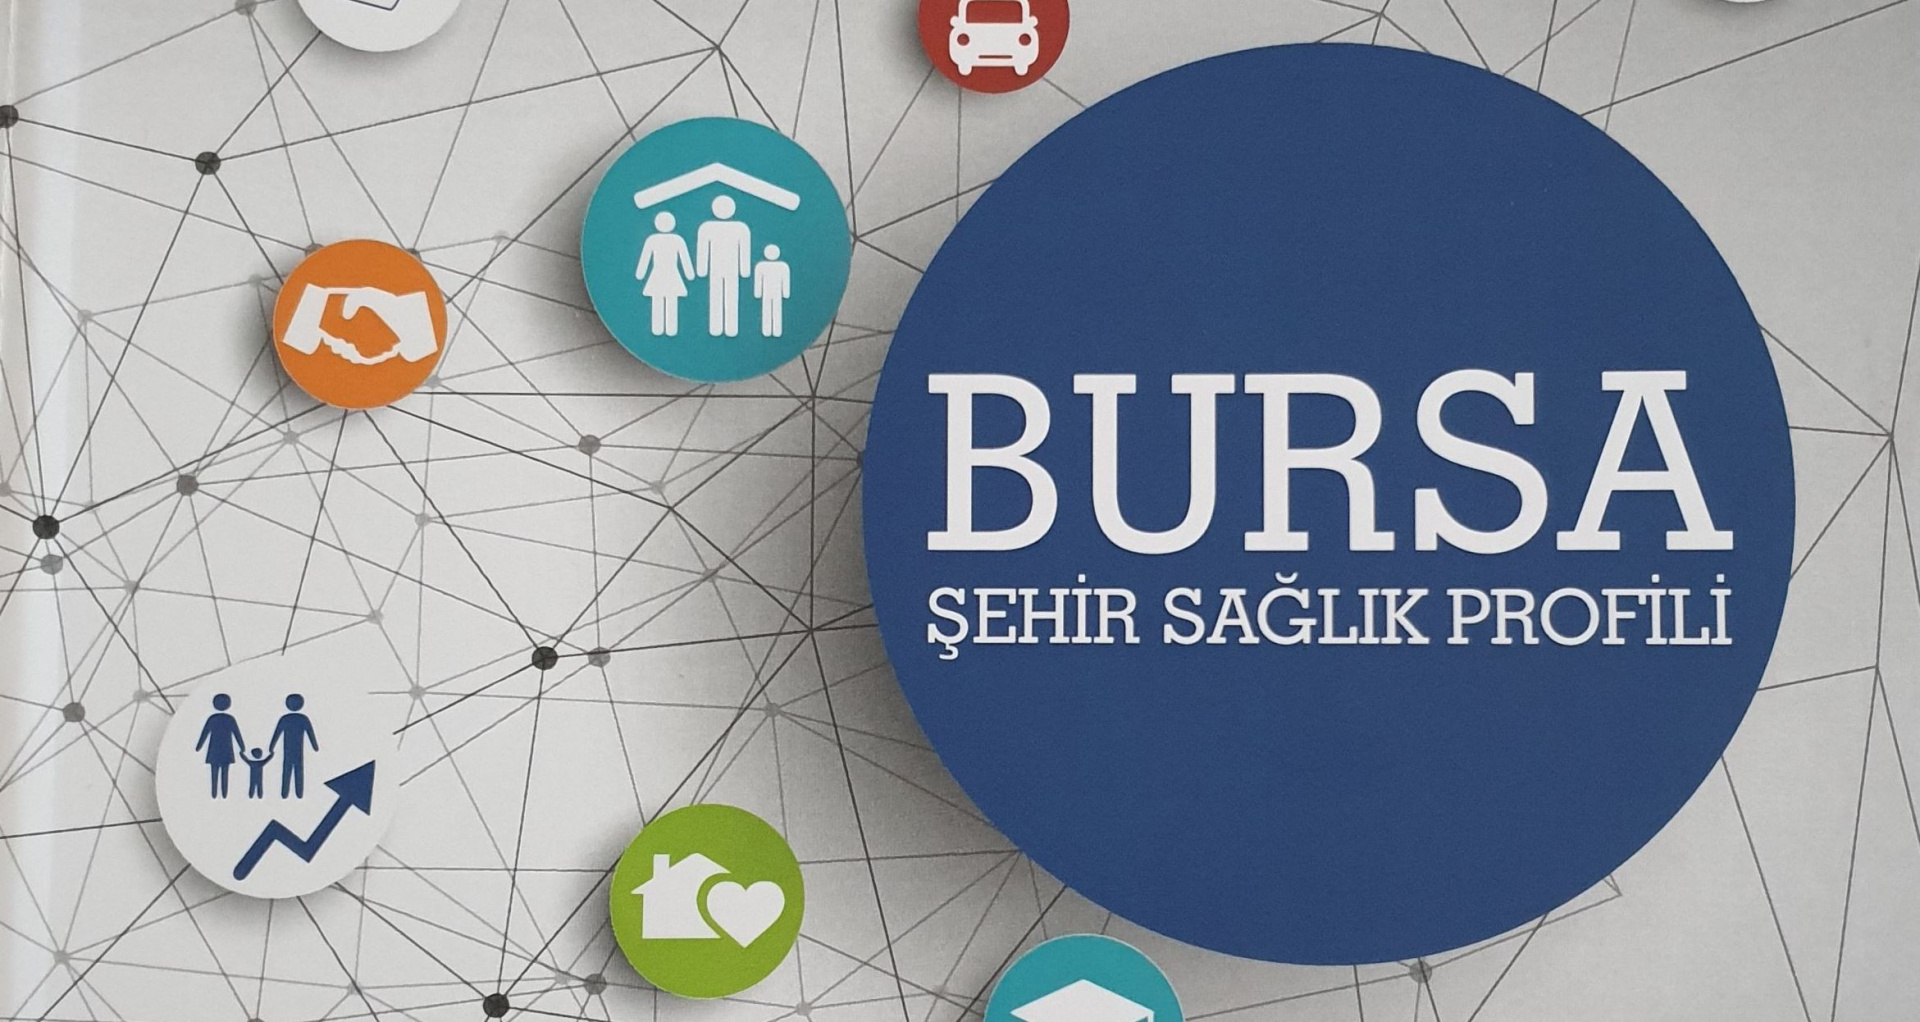  Bursa Şehir Sağlık Profili yayımlandı 